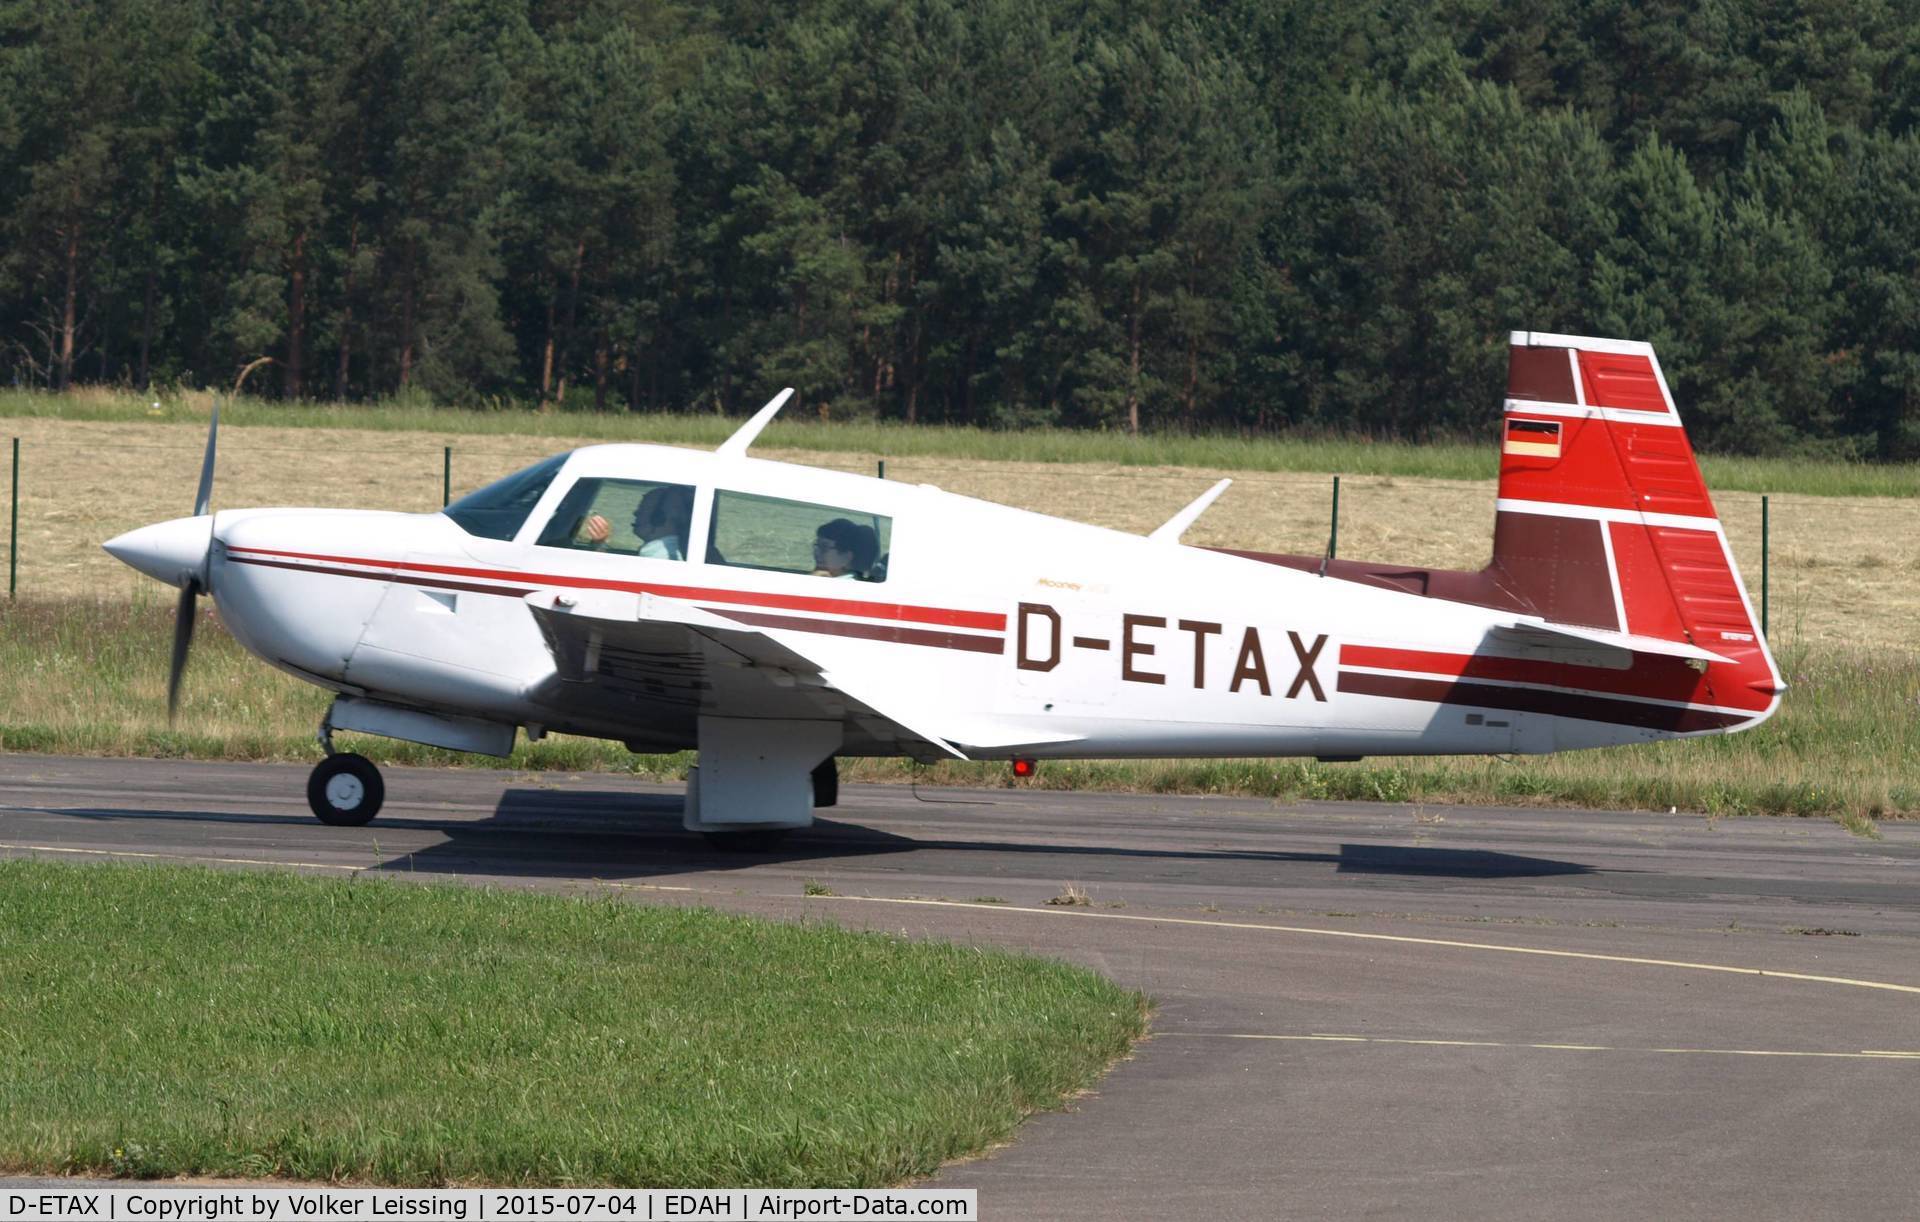 D-ETAX, 1980 Mooney M20J 201 201 C/N 24-1006, taxi to parking